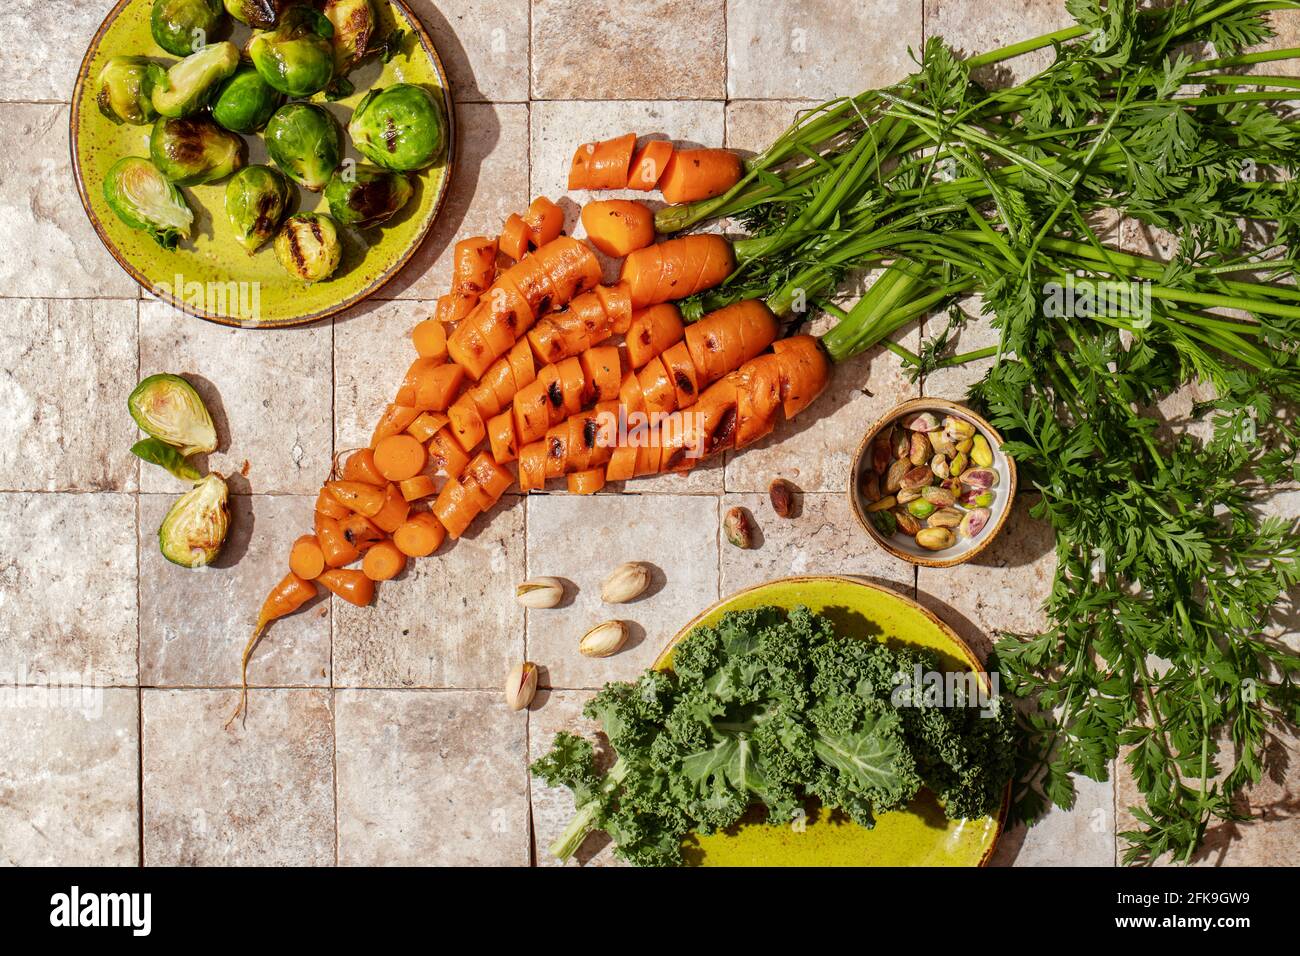 Ein Haufen gegrillter Karottenwurzeln mit grünen Blättern, Rosenkohl, Salatblätter, Nüsse, Aprikosenmarmelade auf Steingeschichten und handgebastelt grüne Teller Draufsicht. Hea Stockfoto